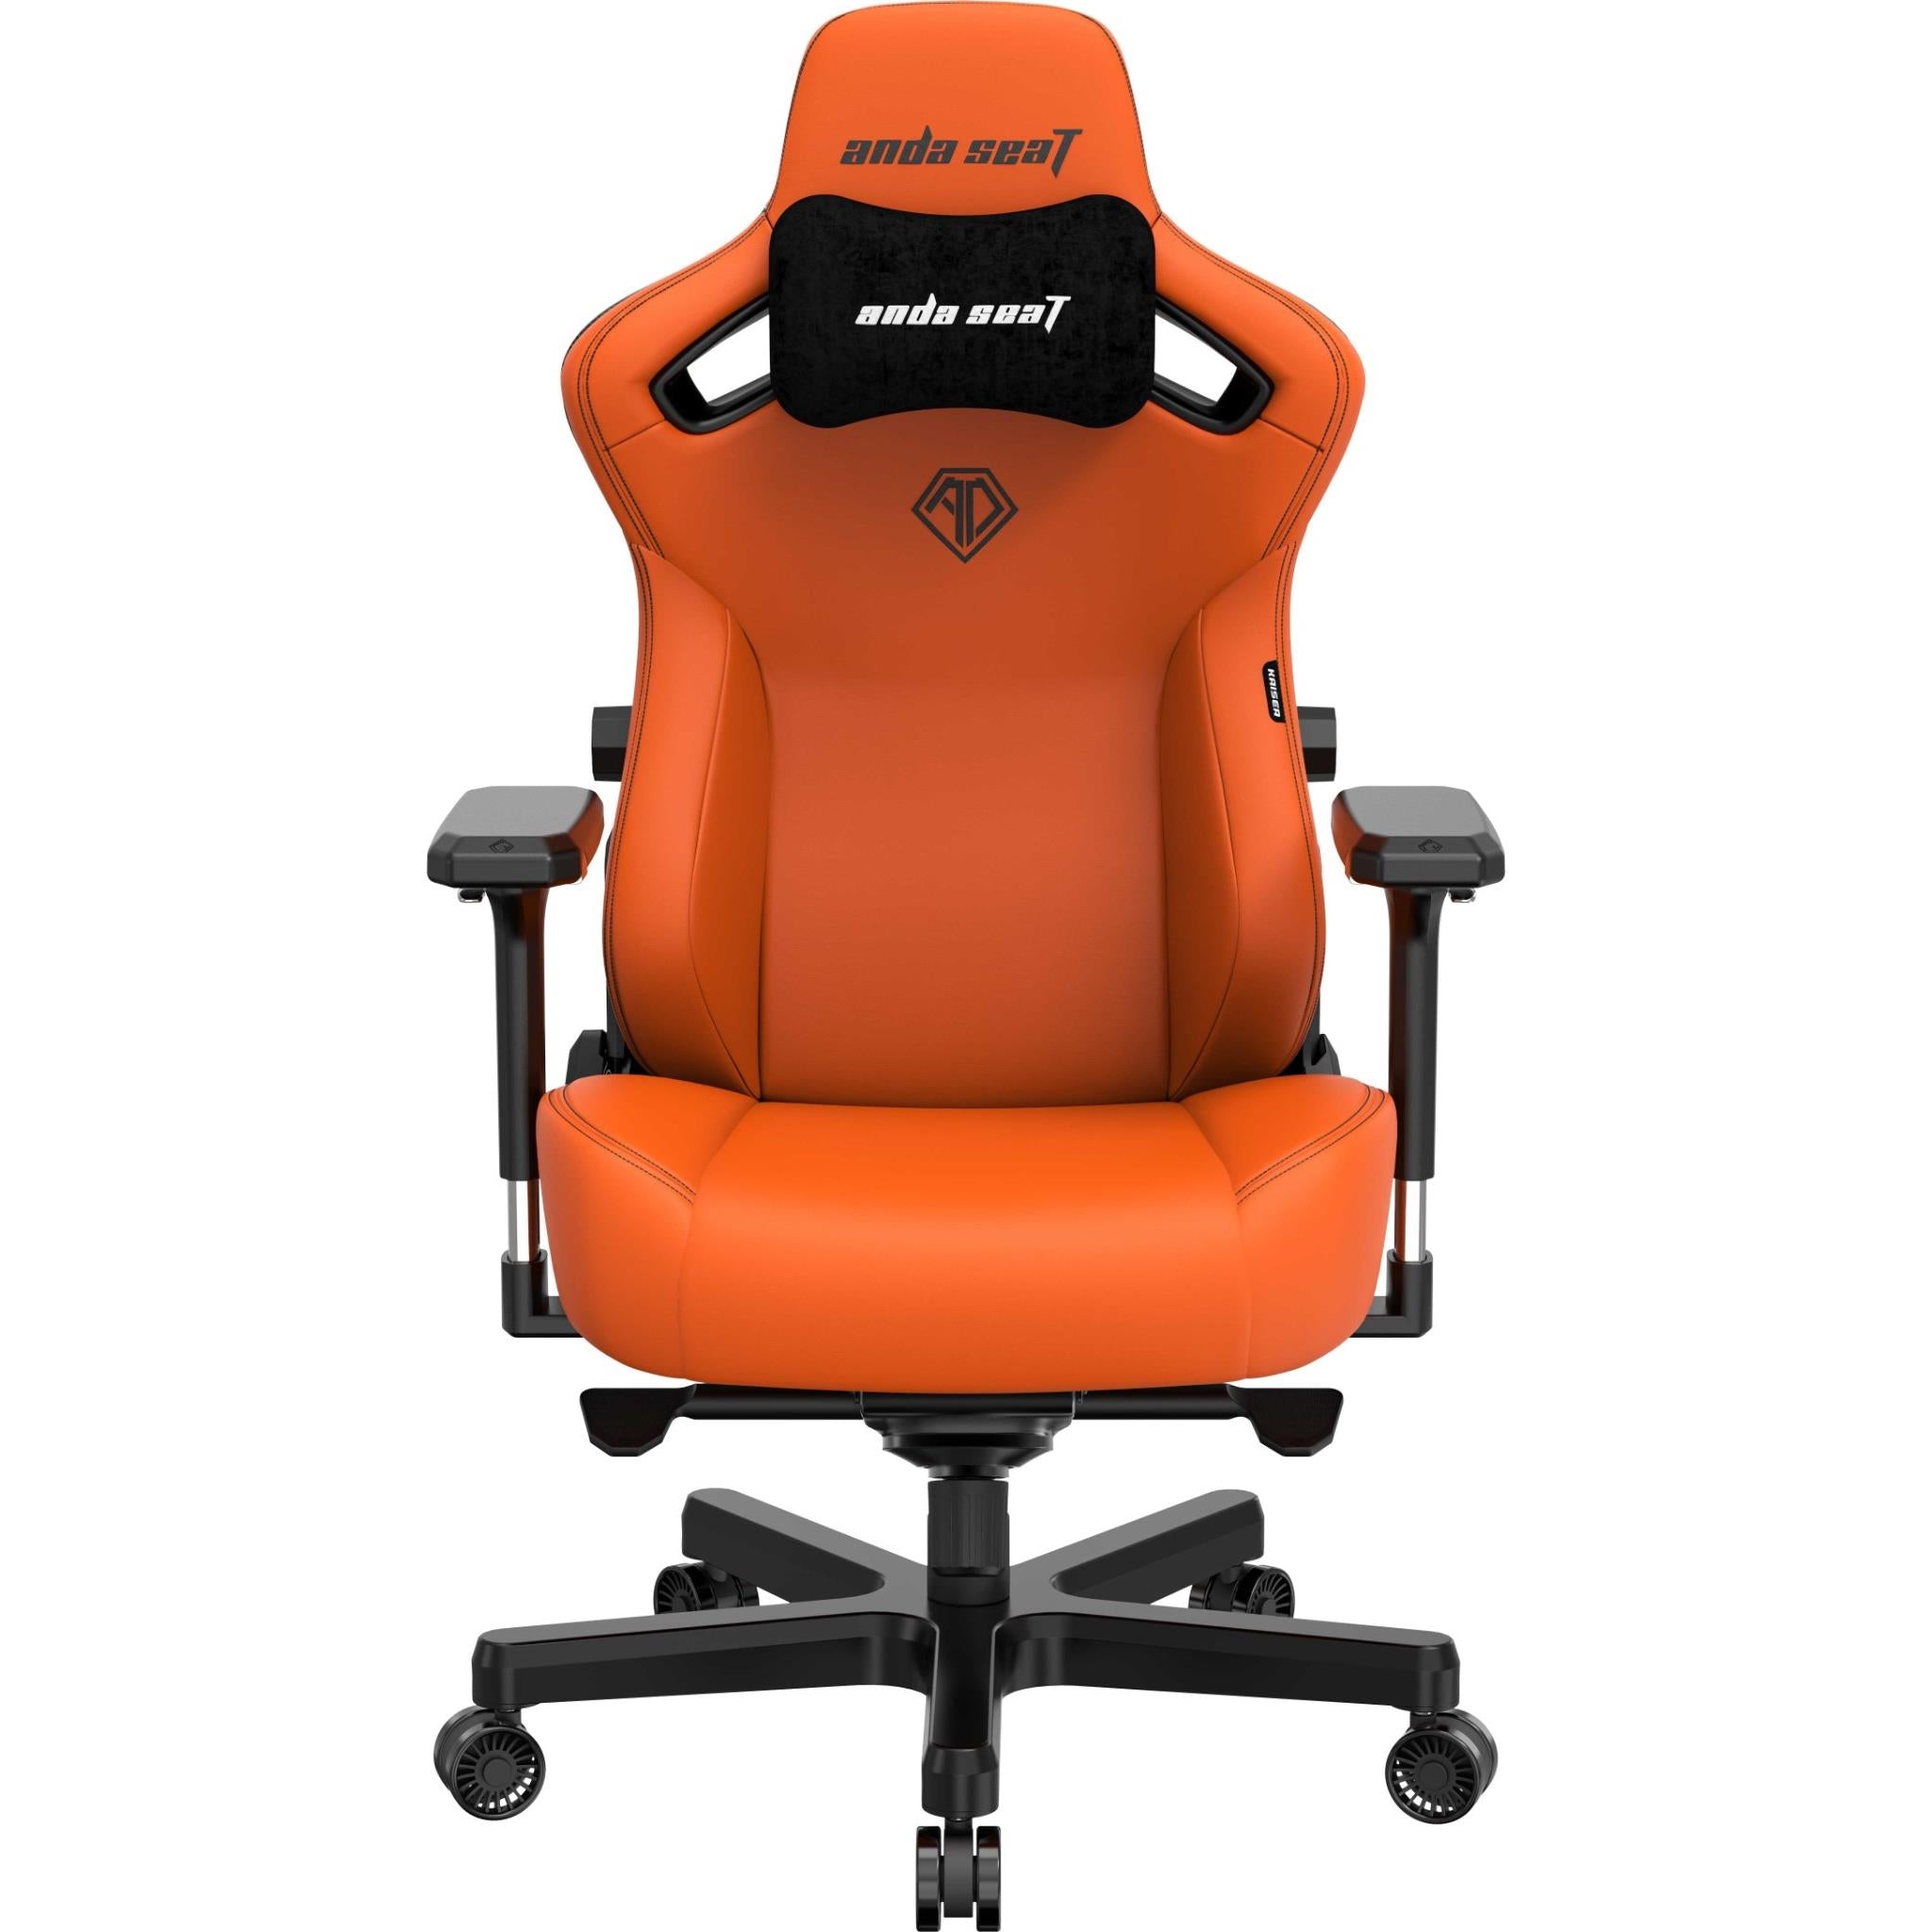 anda seat kaiser 3 series premium gaming chair orange (large)